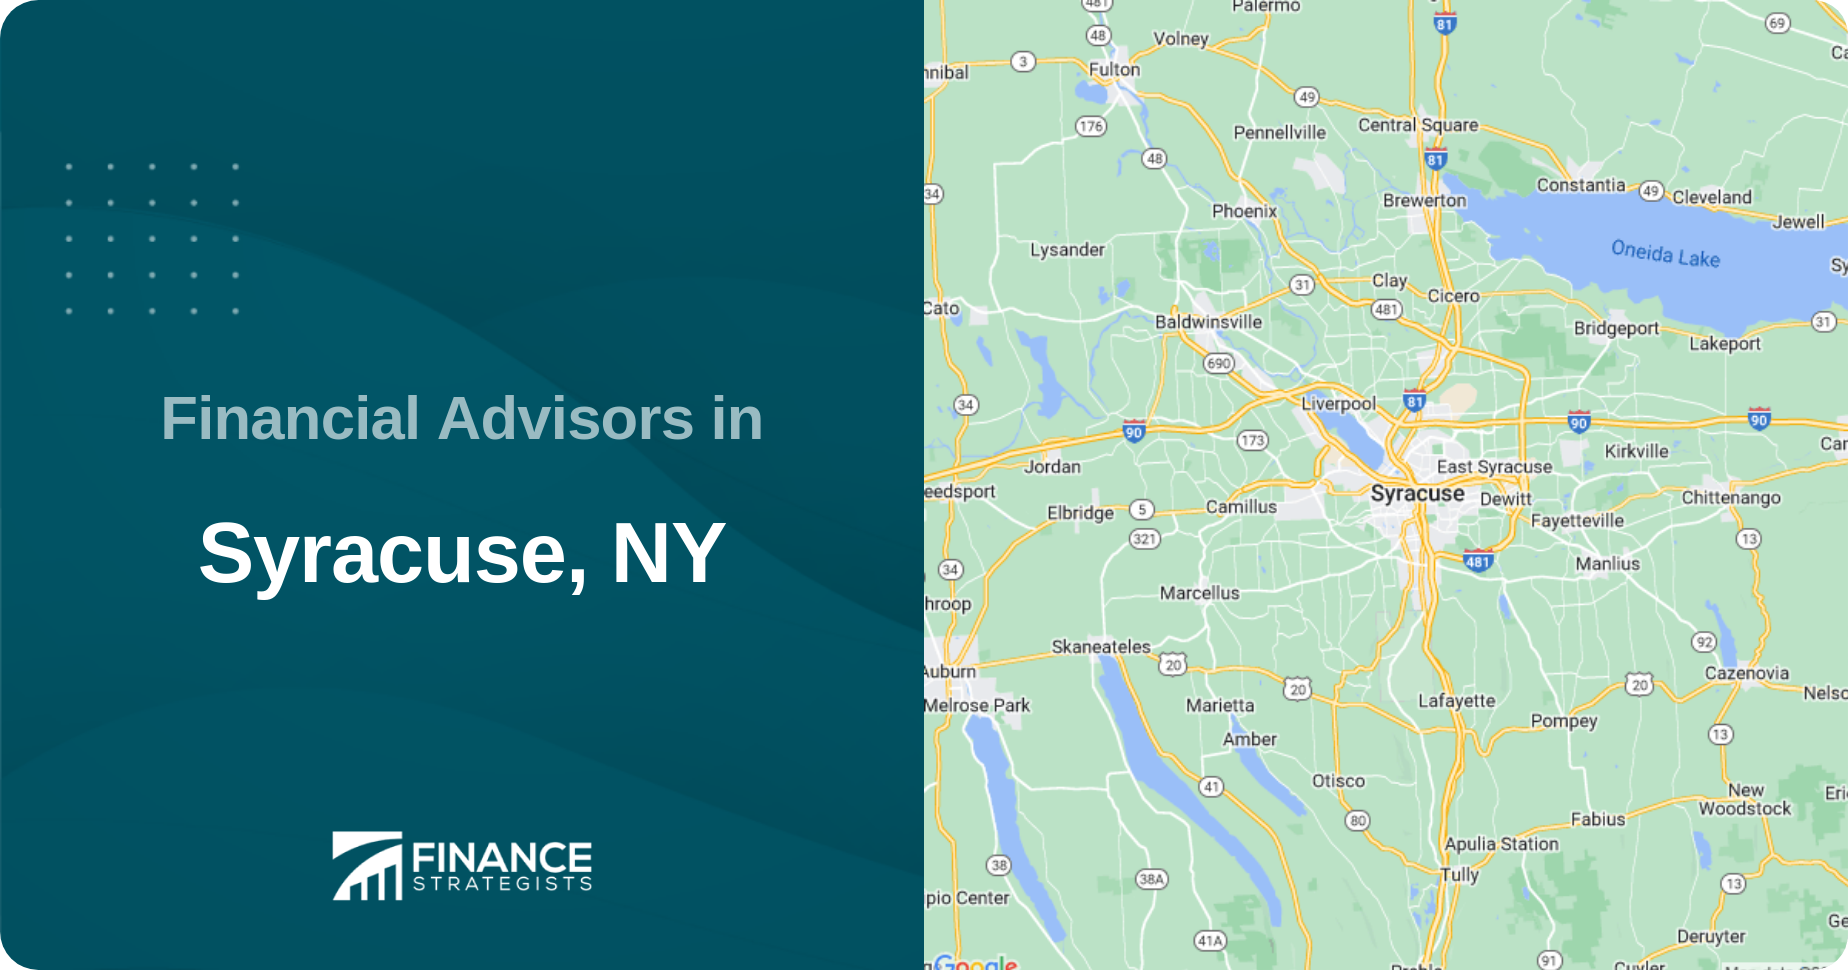 Financial Advisors in Syracuse, NY